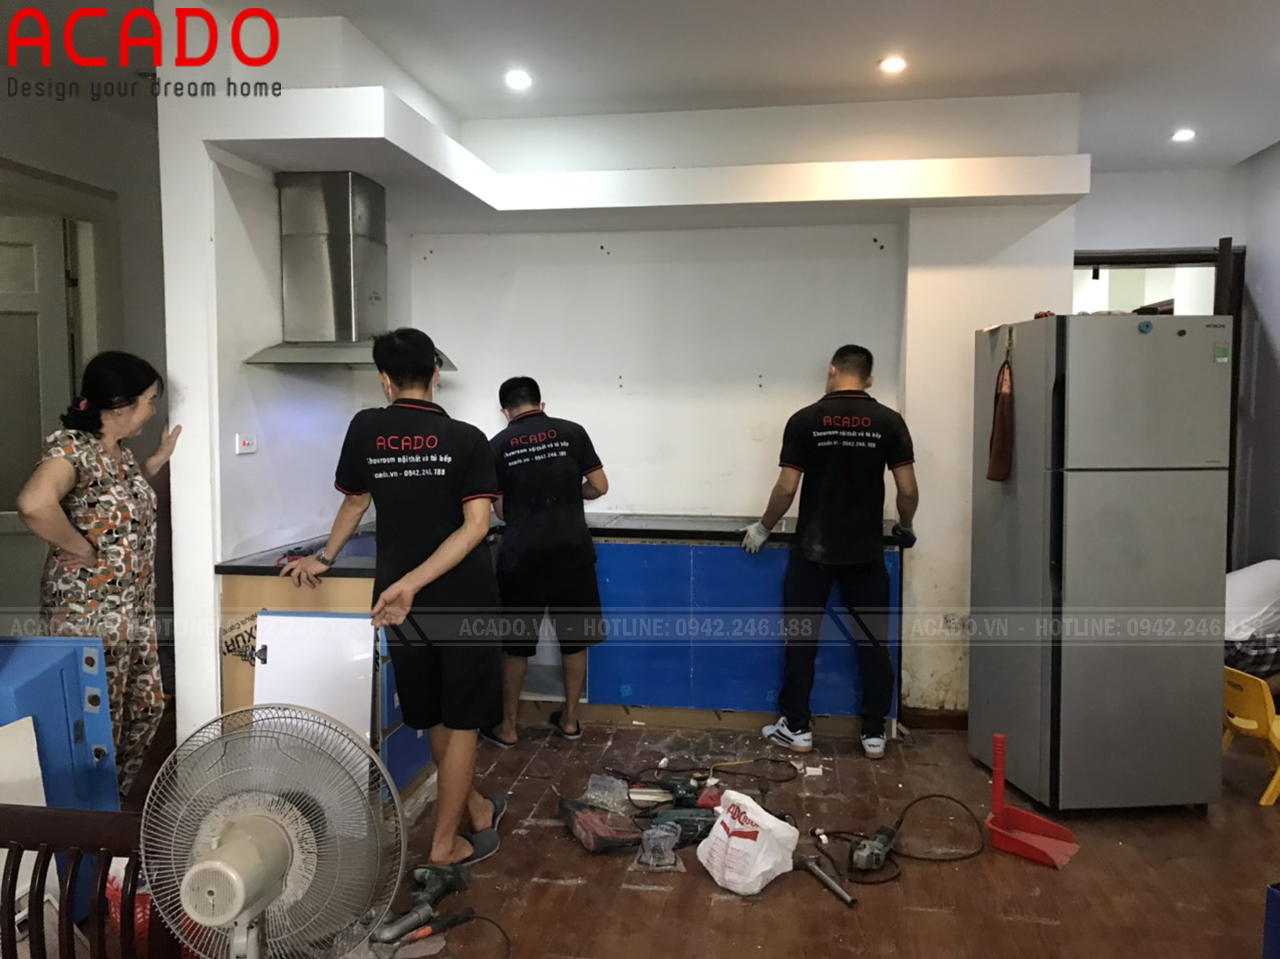 Hình ảnh đội ngũ thi công tủ bếp ACADO đang lắp đặt tủ bếp cho gia đình anh Tuấn Anh